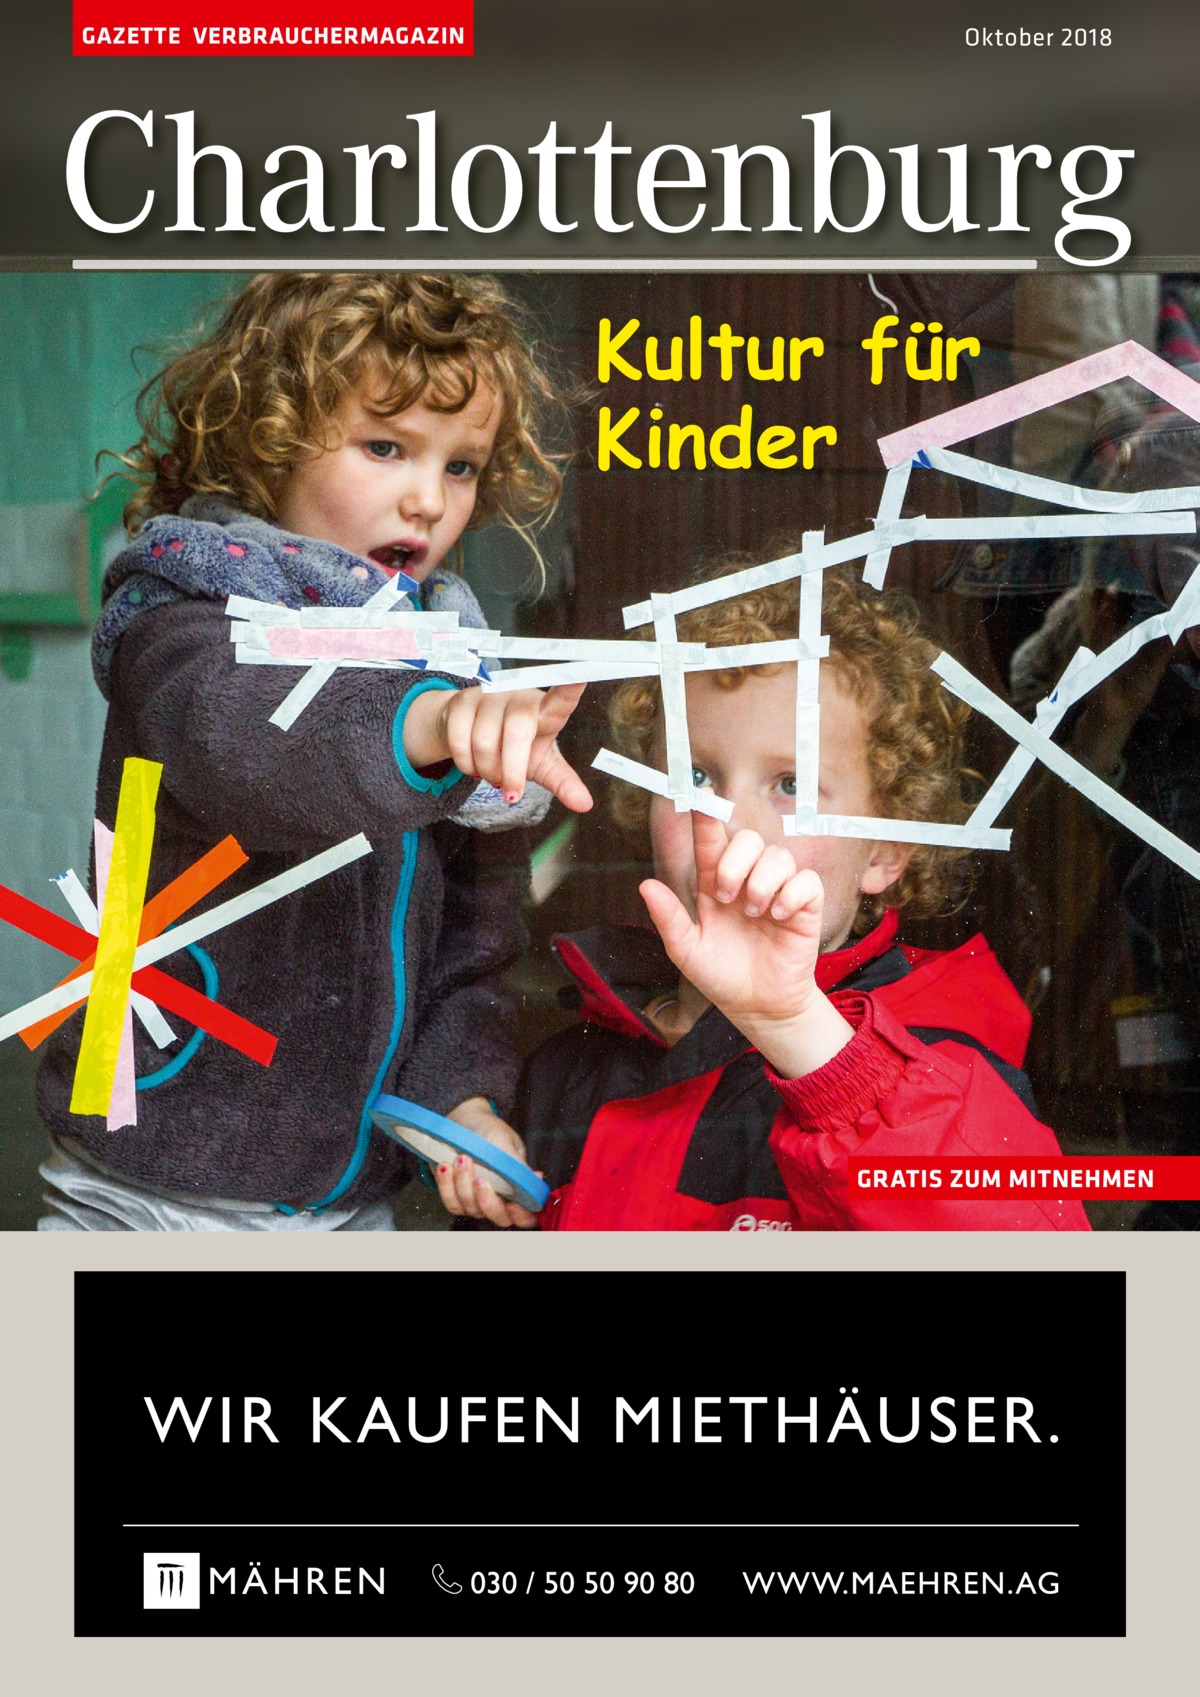 GAZETTE VERBRAUCHERMAGAZIN  Oktober 2018  Charlottenburg Kultur für Kinder  GRATIS ZUM MITNEHMEN